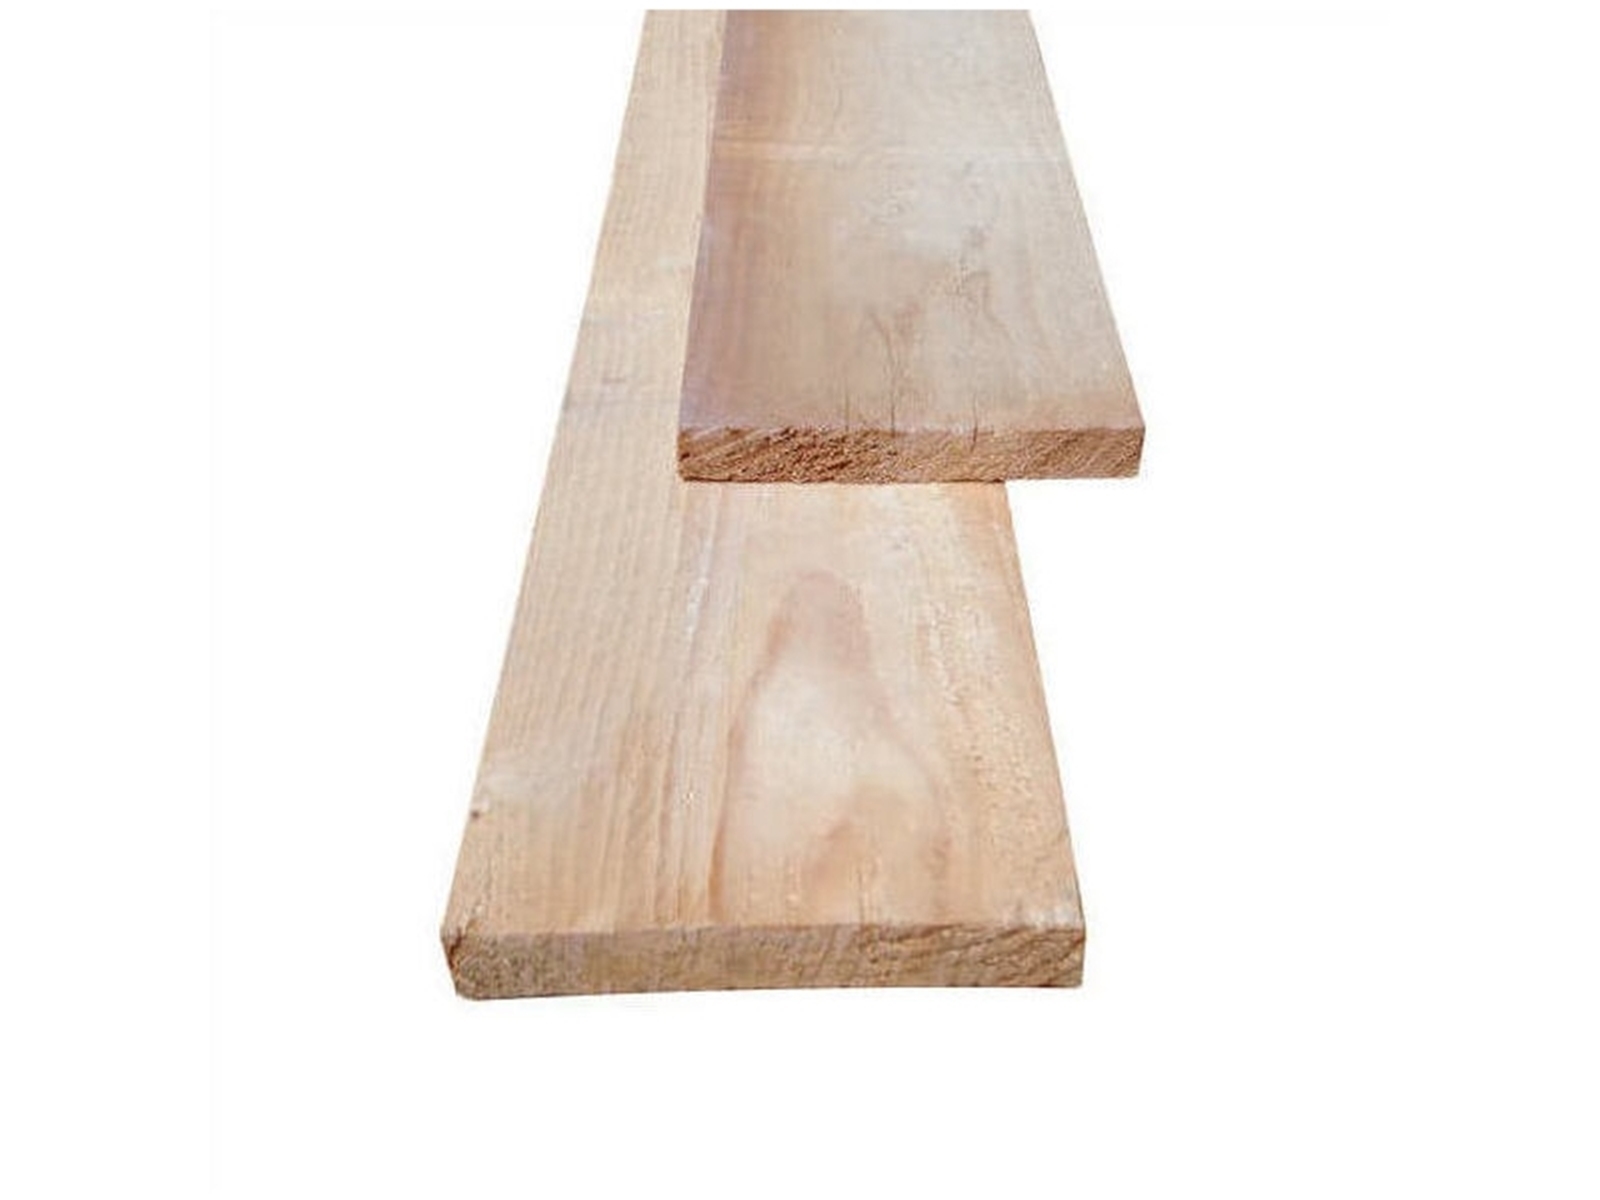 ME-vuren houten plank (bouwplank), ±23x180mm, II/III, fijnbezaagd, onbehandeld, 5000mm